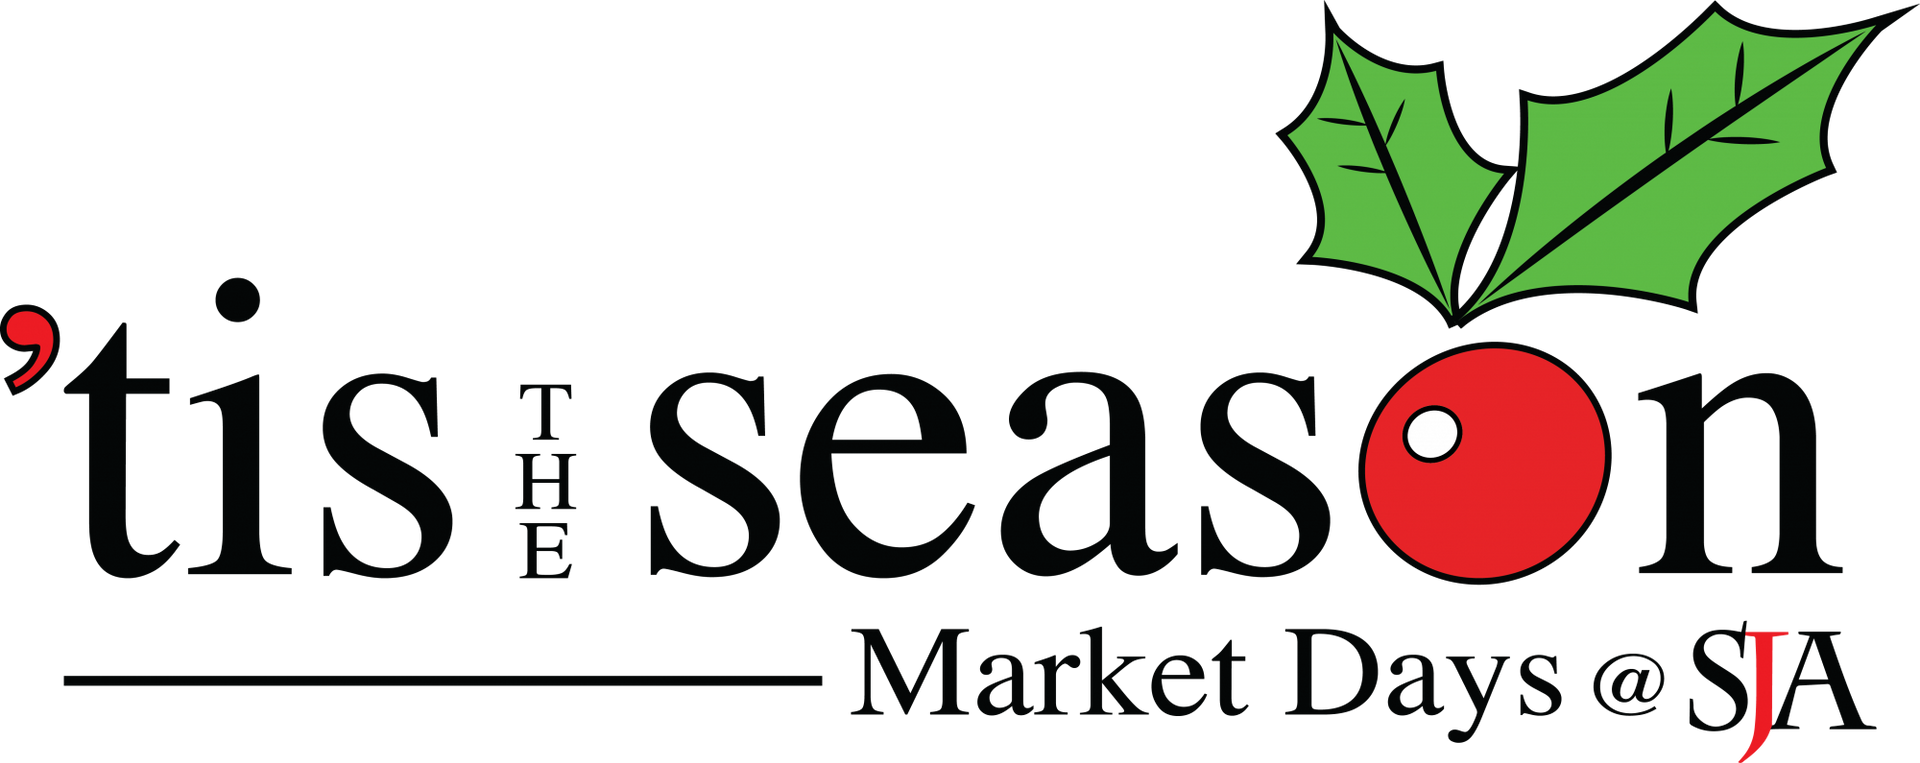 A logo for tis the season market days